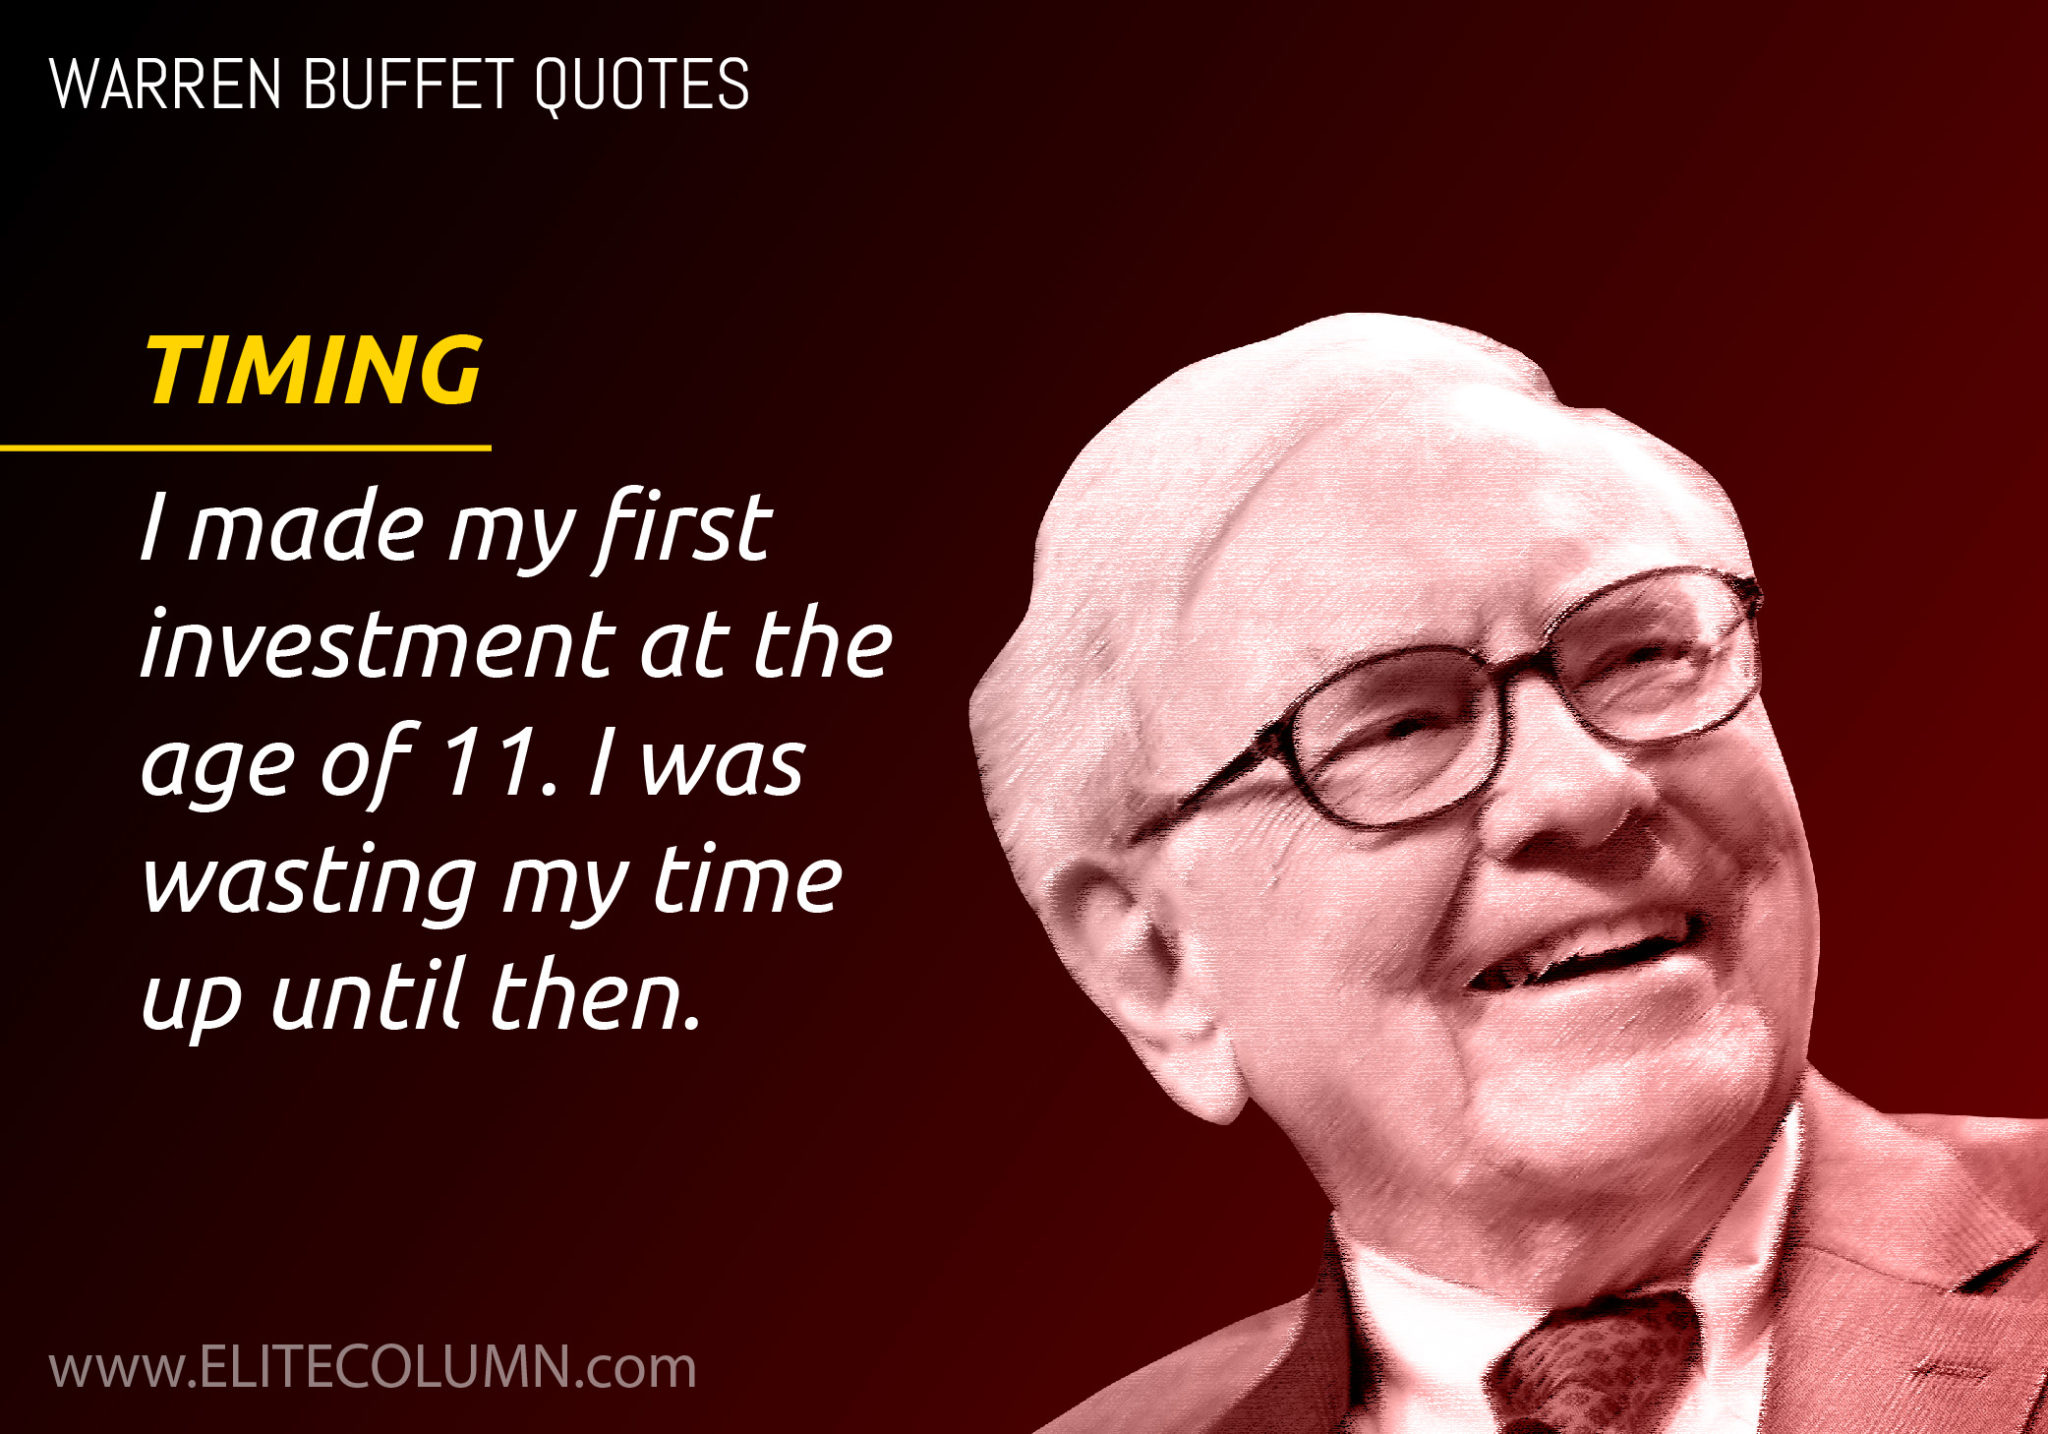 Warren Buffett On Timing